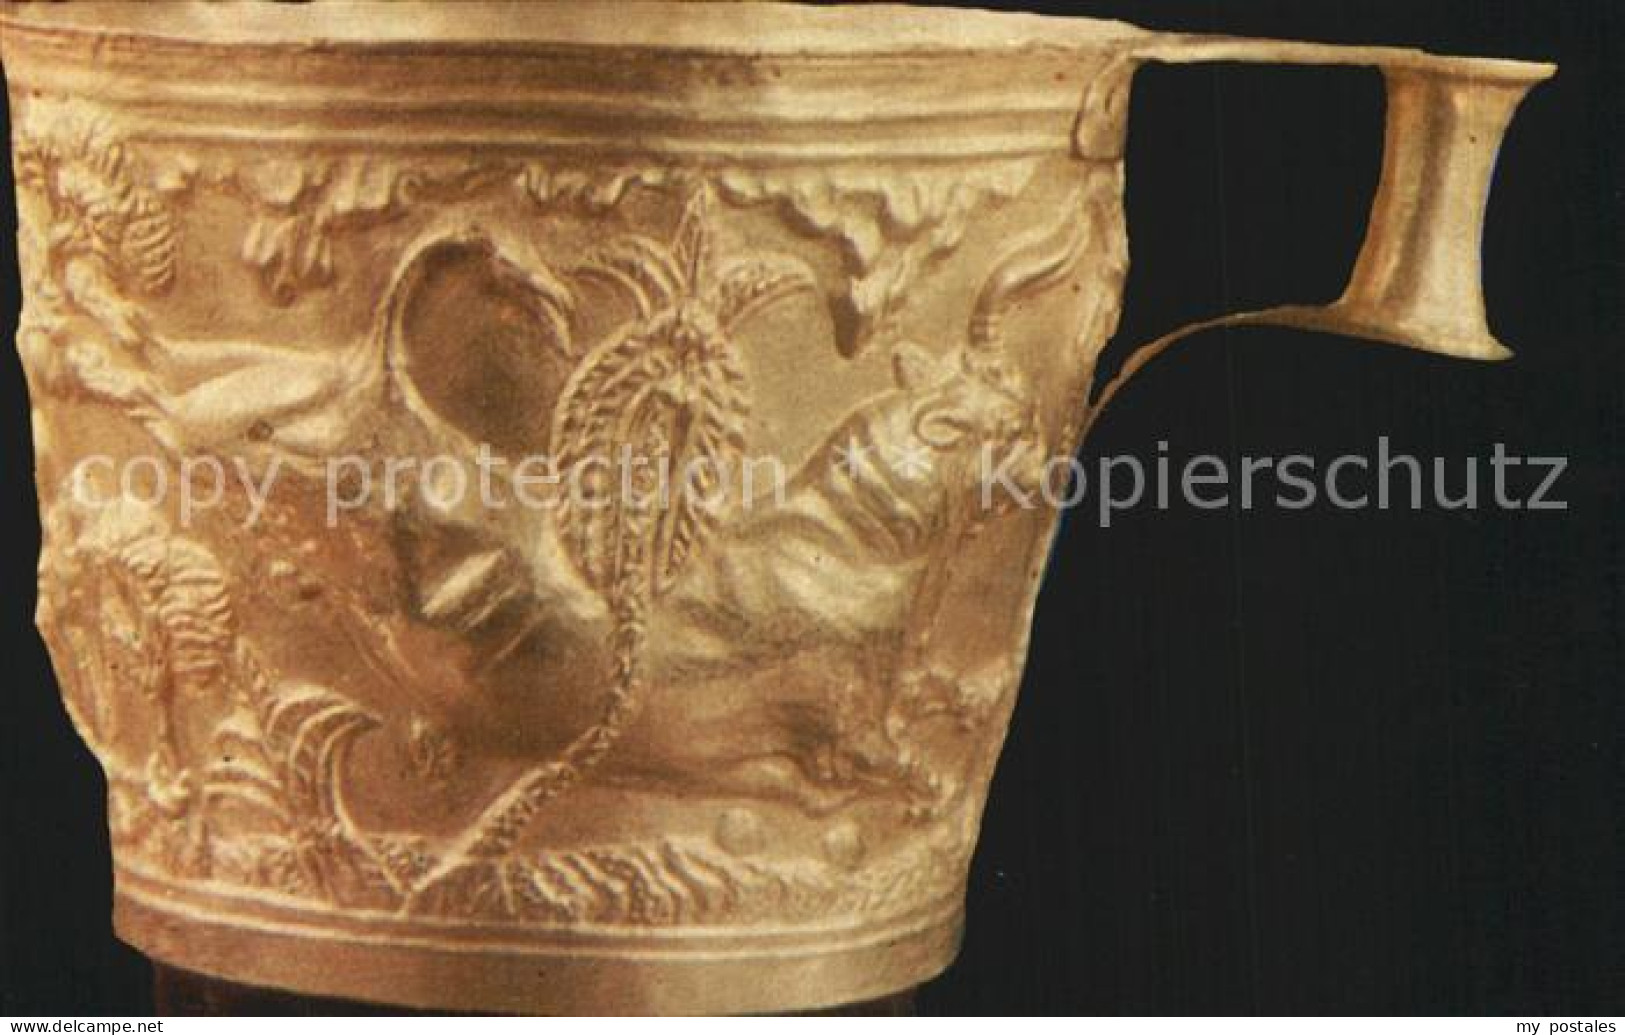 72550283 Athen Griechenland Goldbecher Aus Einem Grab In Vaphio  - Grèce